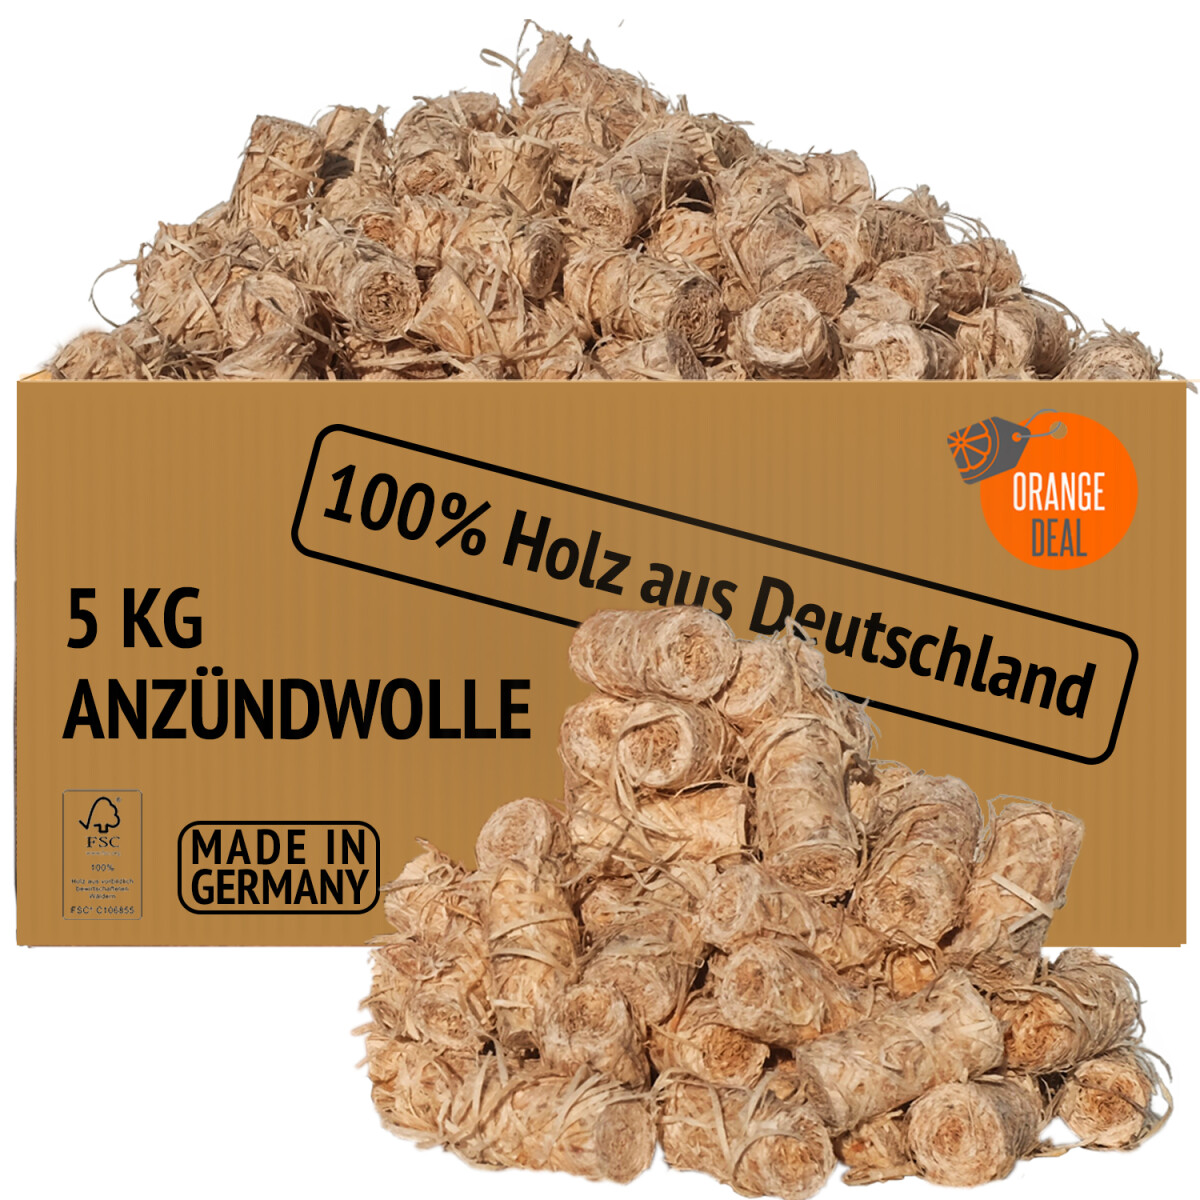 ORANGE DEAL 2,0 kg Premium Holzwolle Anzünder Grillanzünder Kaminanzünder Ofenanzünder Anzündwolle Anzündhilfe aus 100% Holz aus Deutschen Wäldern und Wachs FSC® 100%